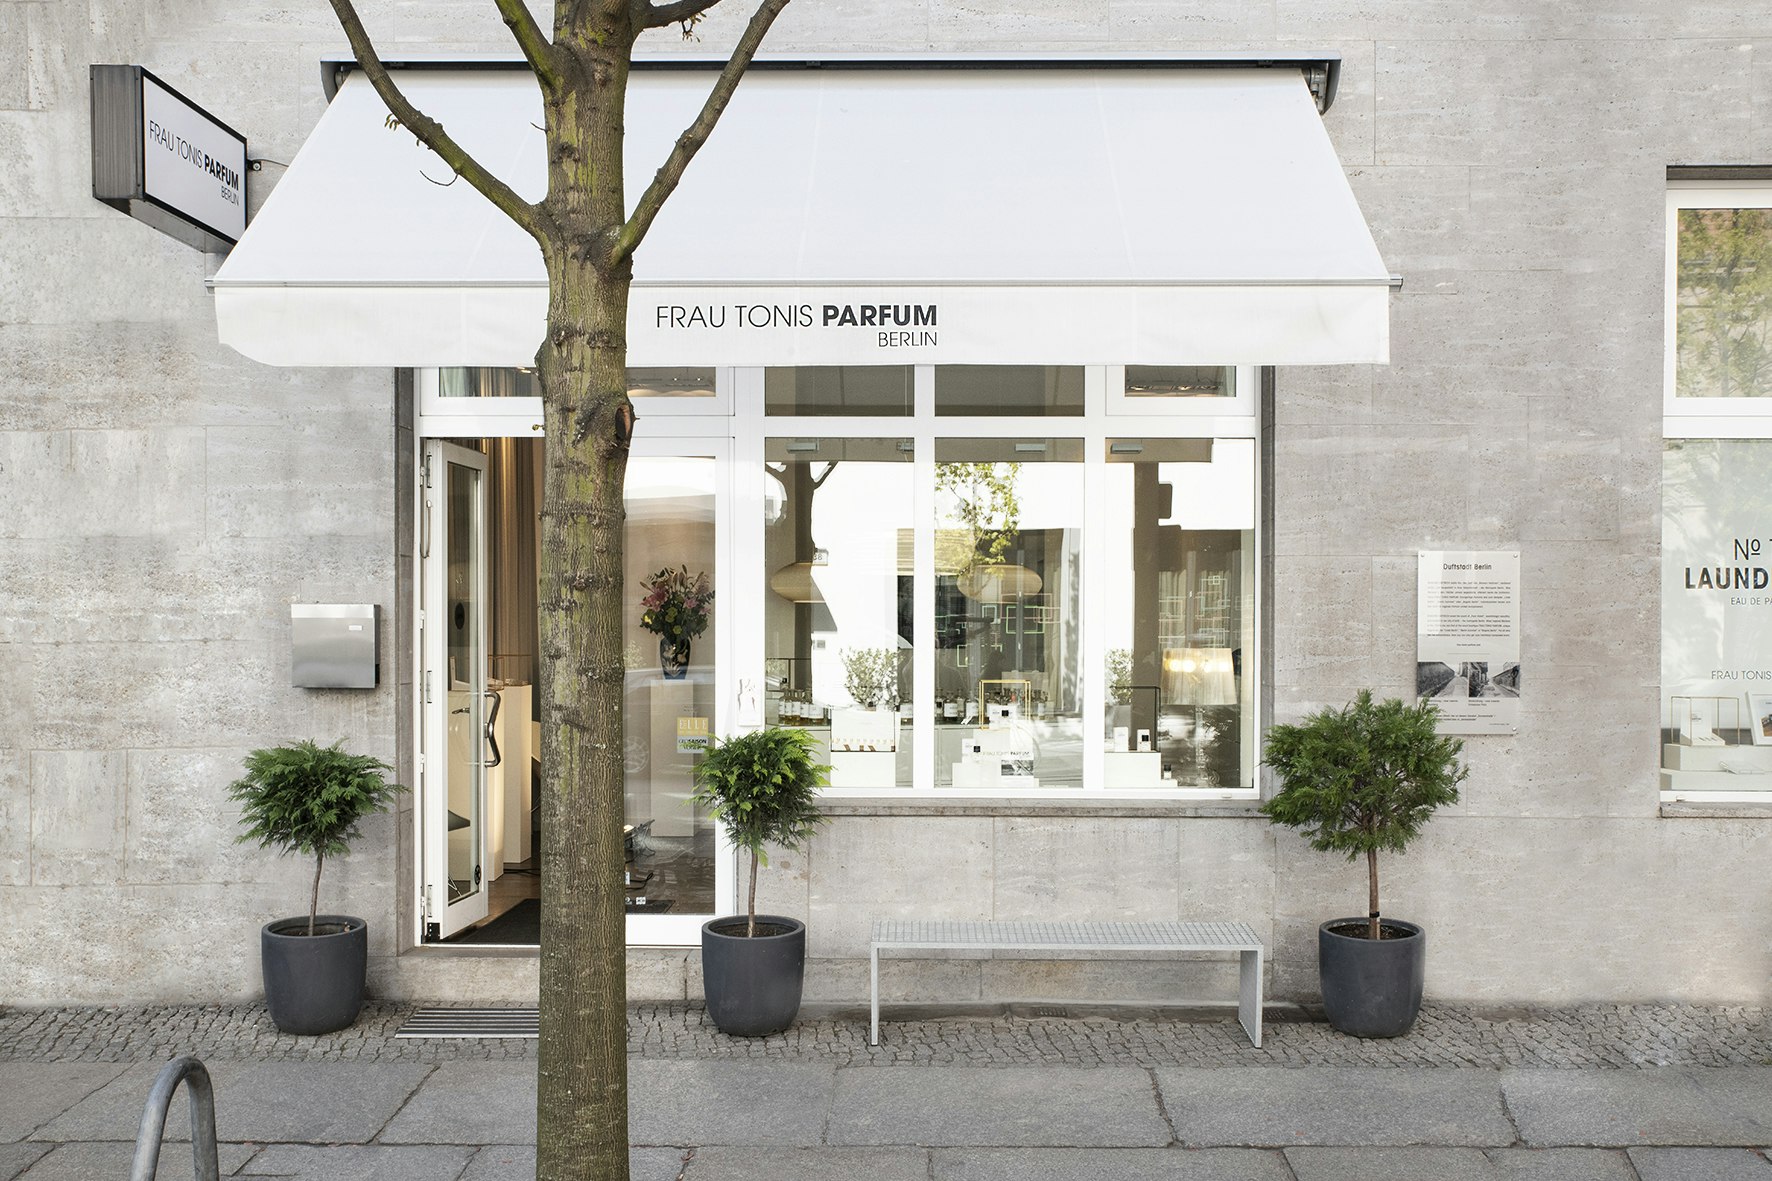 Frau Tonis Parfum boutique in Berlin